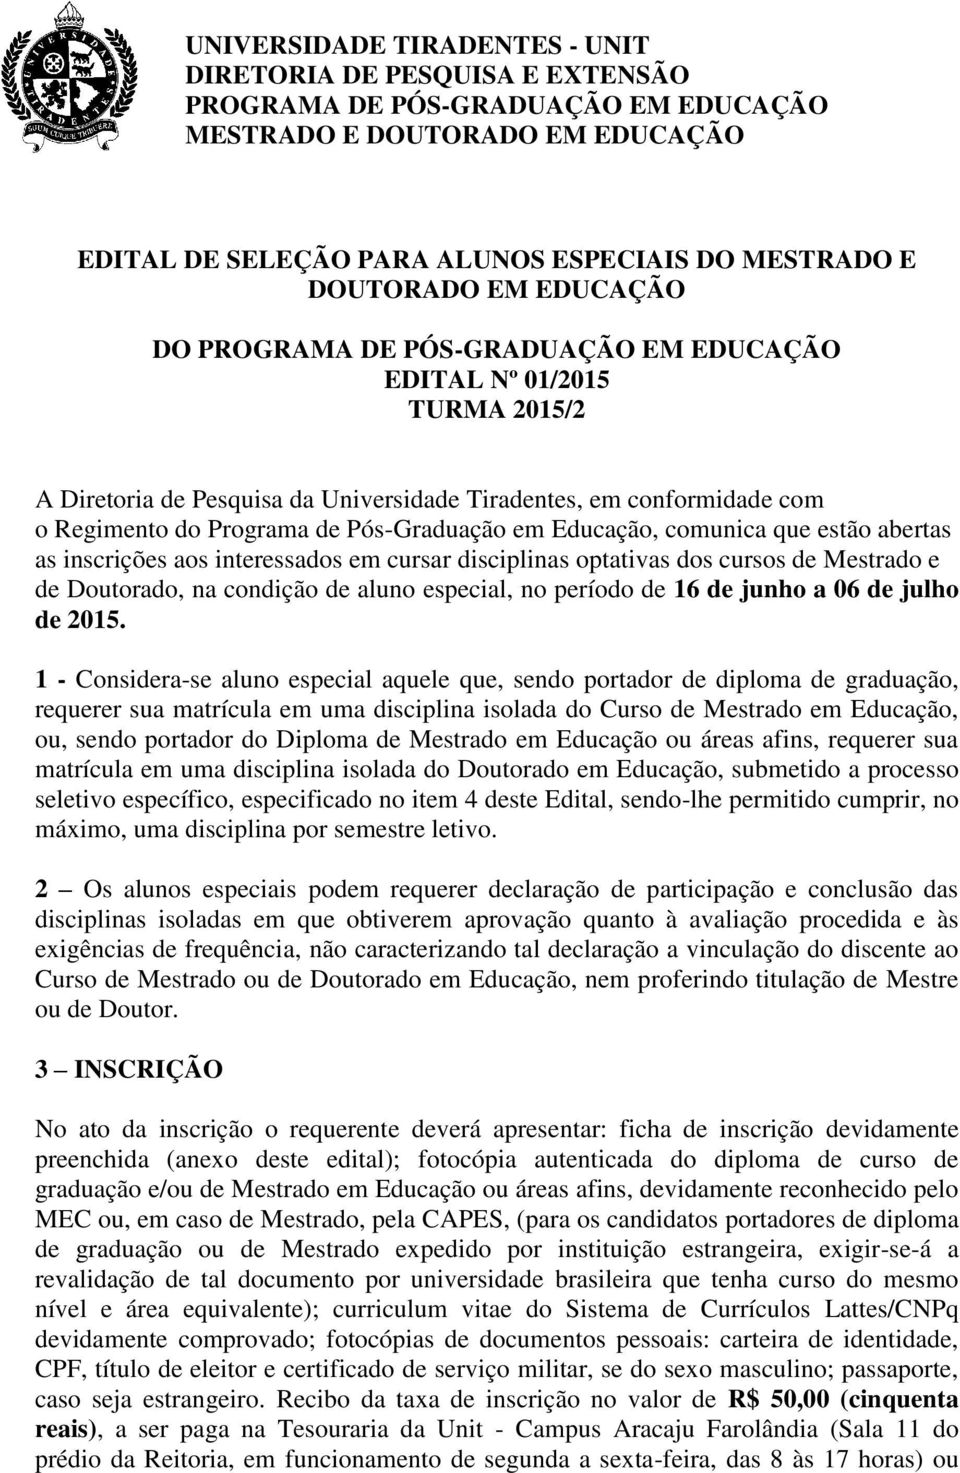 disciplinas optativas dos cursos de Mestrado e de Doutorado, na condição de aluno especial, no período de 16 de junho a 06 de julho de 2015.